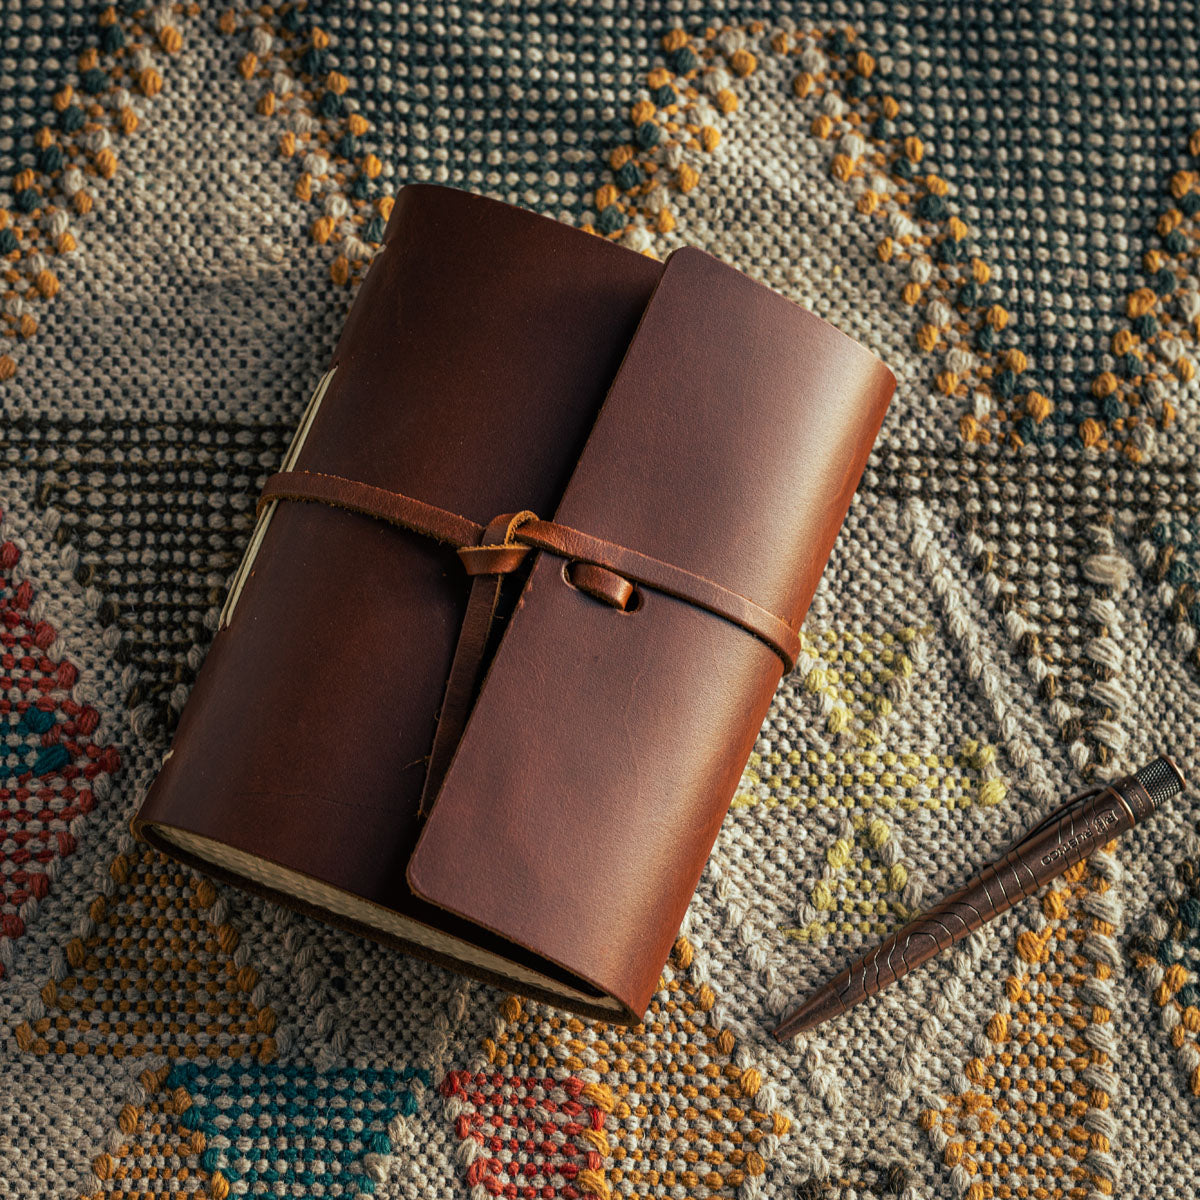 Beginner Leather Journal